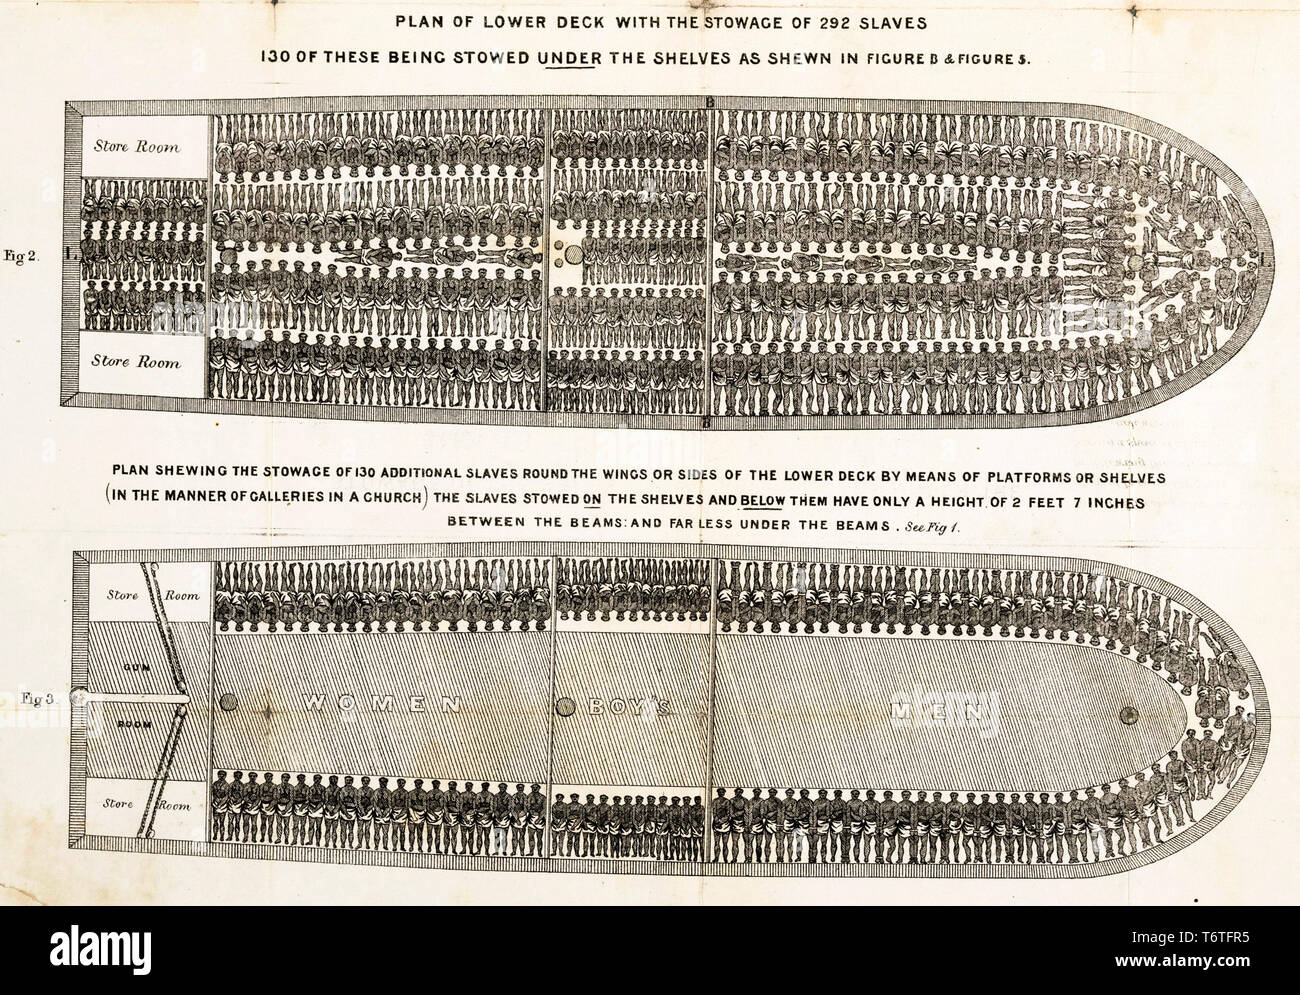 Stauung der Slaves Diagramm der Britischen Sklavenschiff Brookes unter der Sklaverei geregelten Slave Trade Act von 1788, 1788 Stockfoto